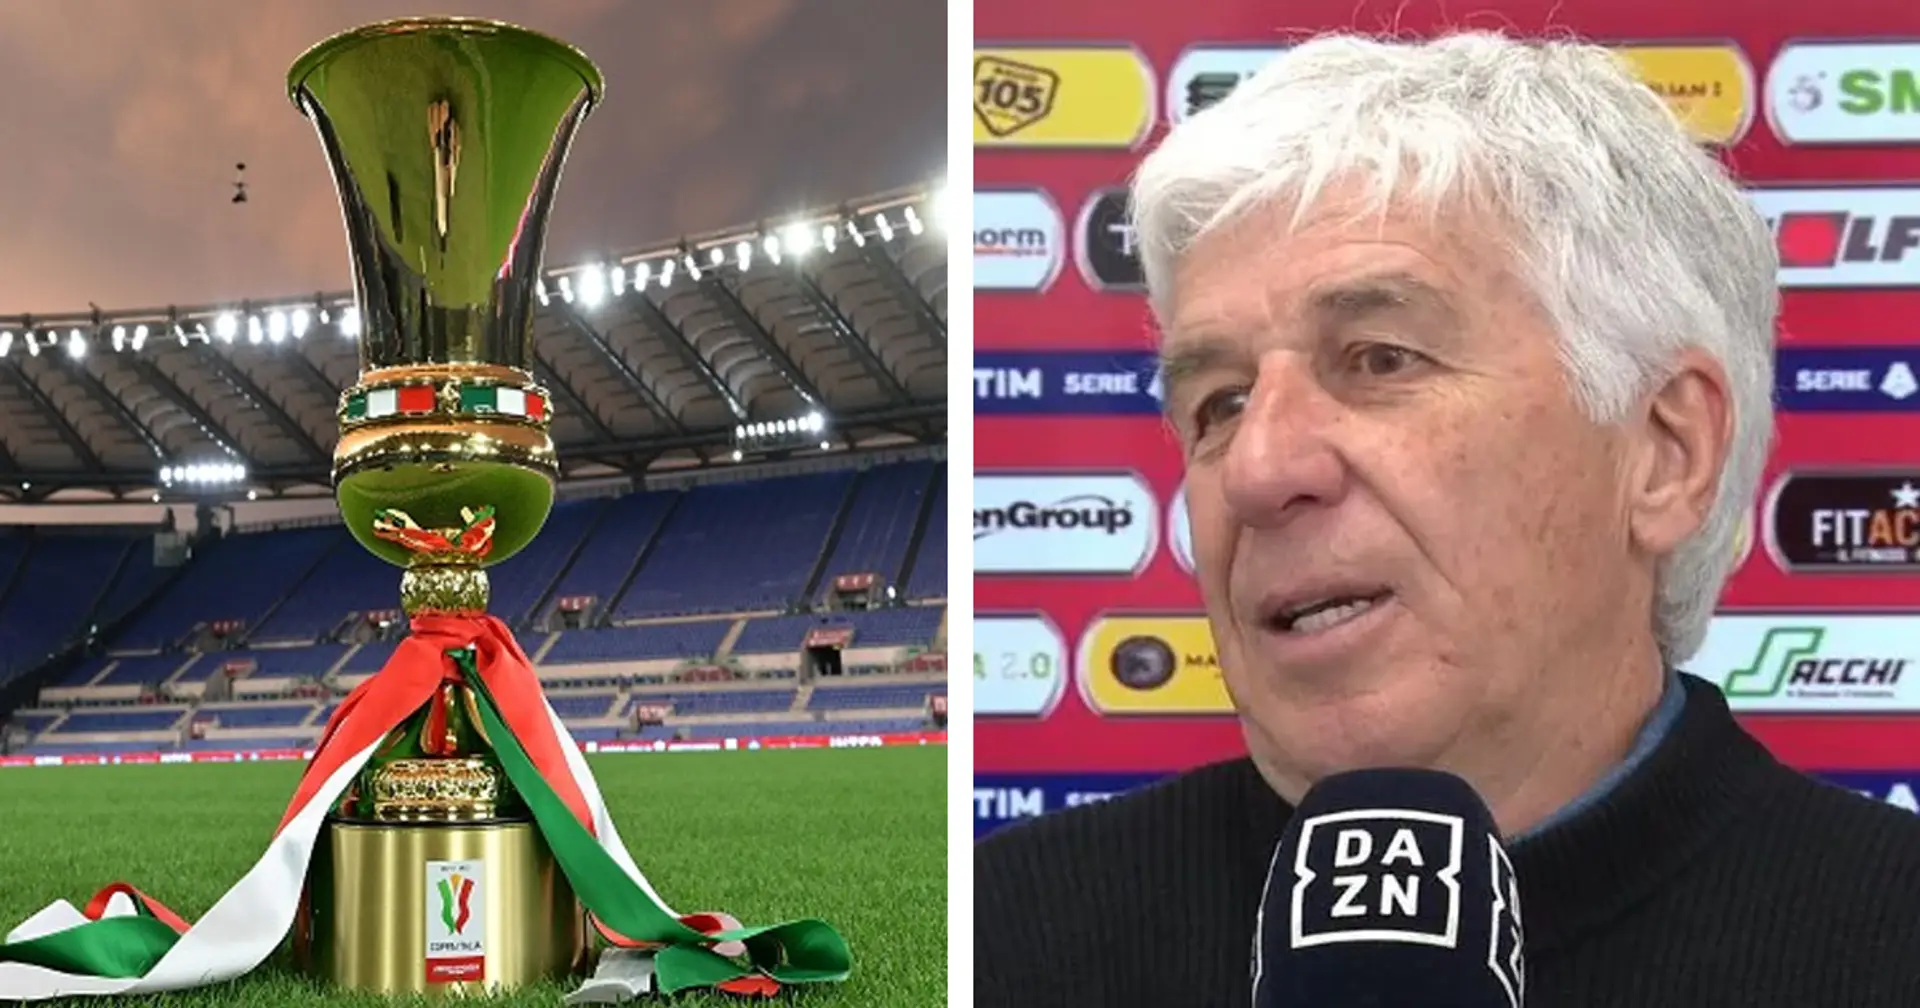 Gasperini pensa già alla Coppa Italia, ma non si sbilancia: "Noi favoriti? Contro la Juve mi sembra esagerato!"